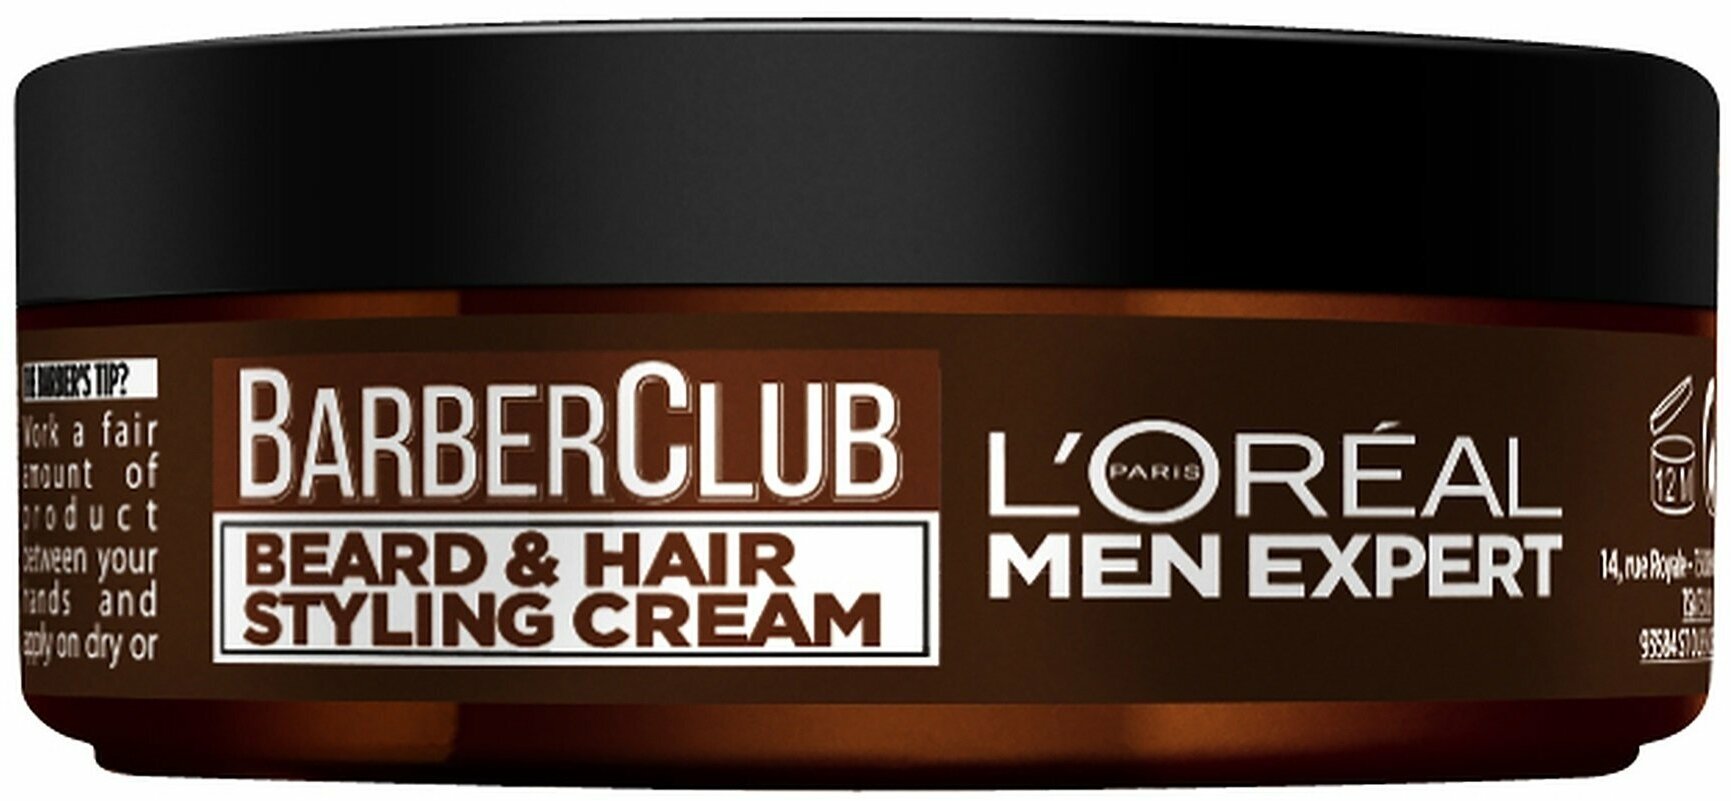 L'OREAL Крем-стайлинг для бороды и волос Men Expert Barber Club, 75 мл